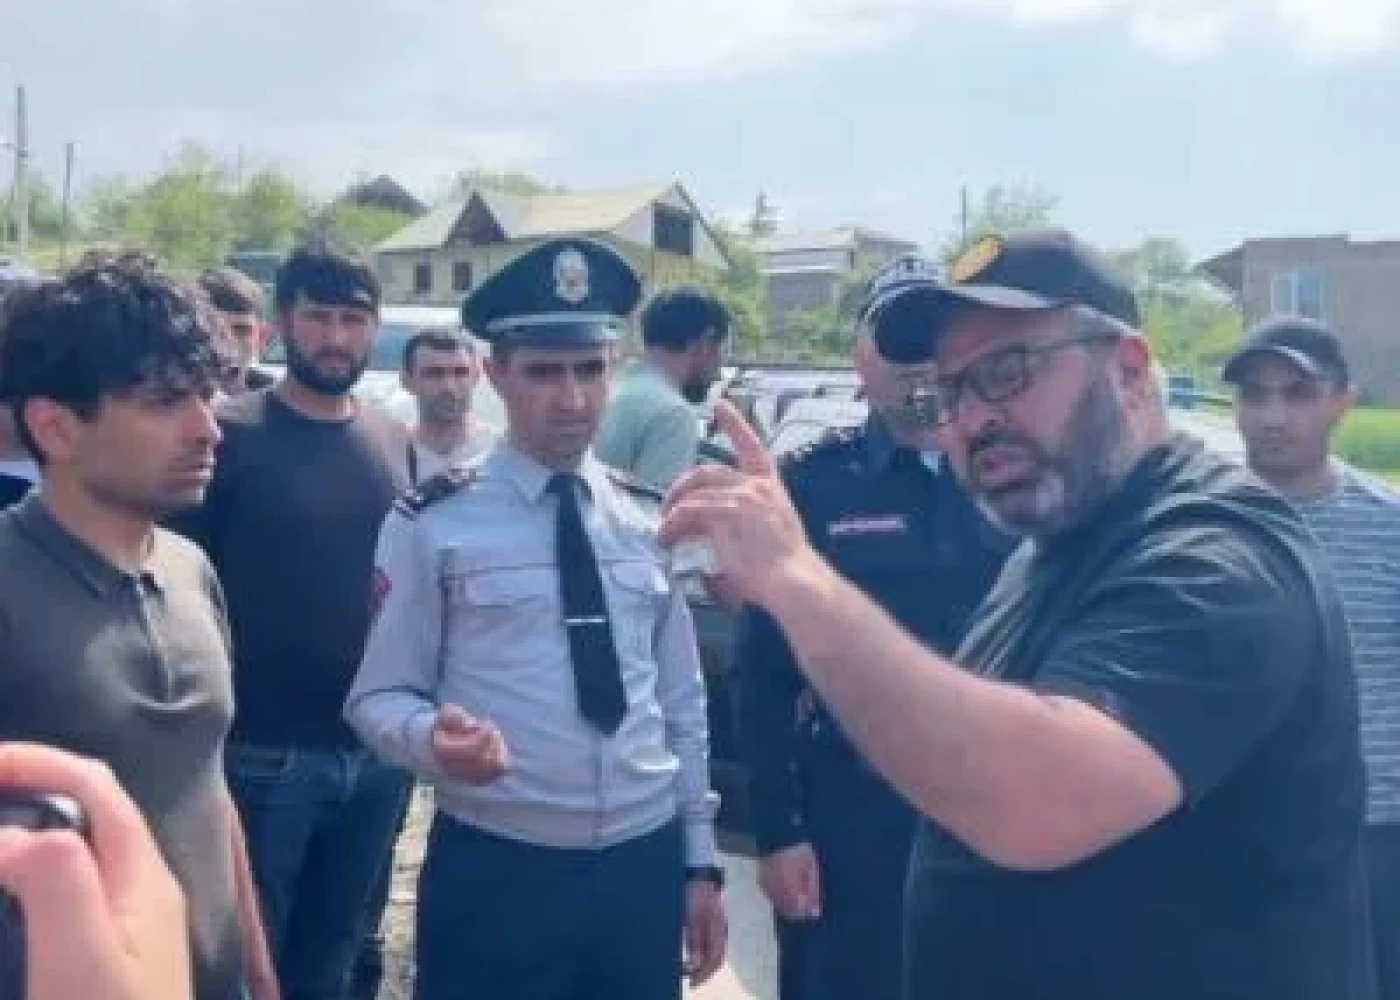 Polis erməni deputatı Azərbaycanla sərhəddə buraxmadı